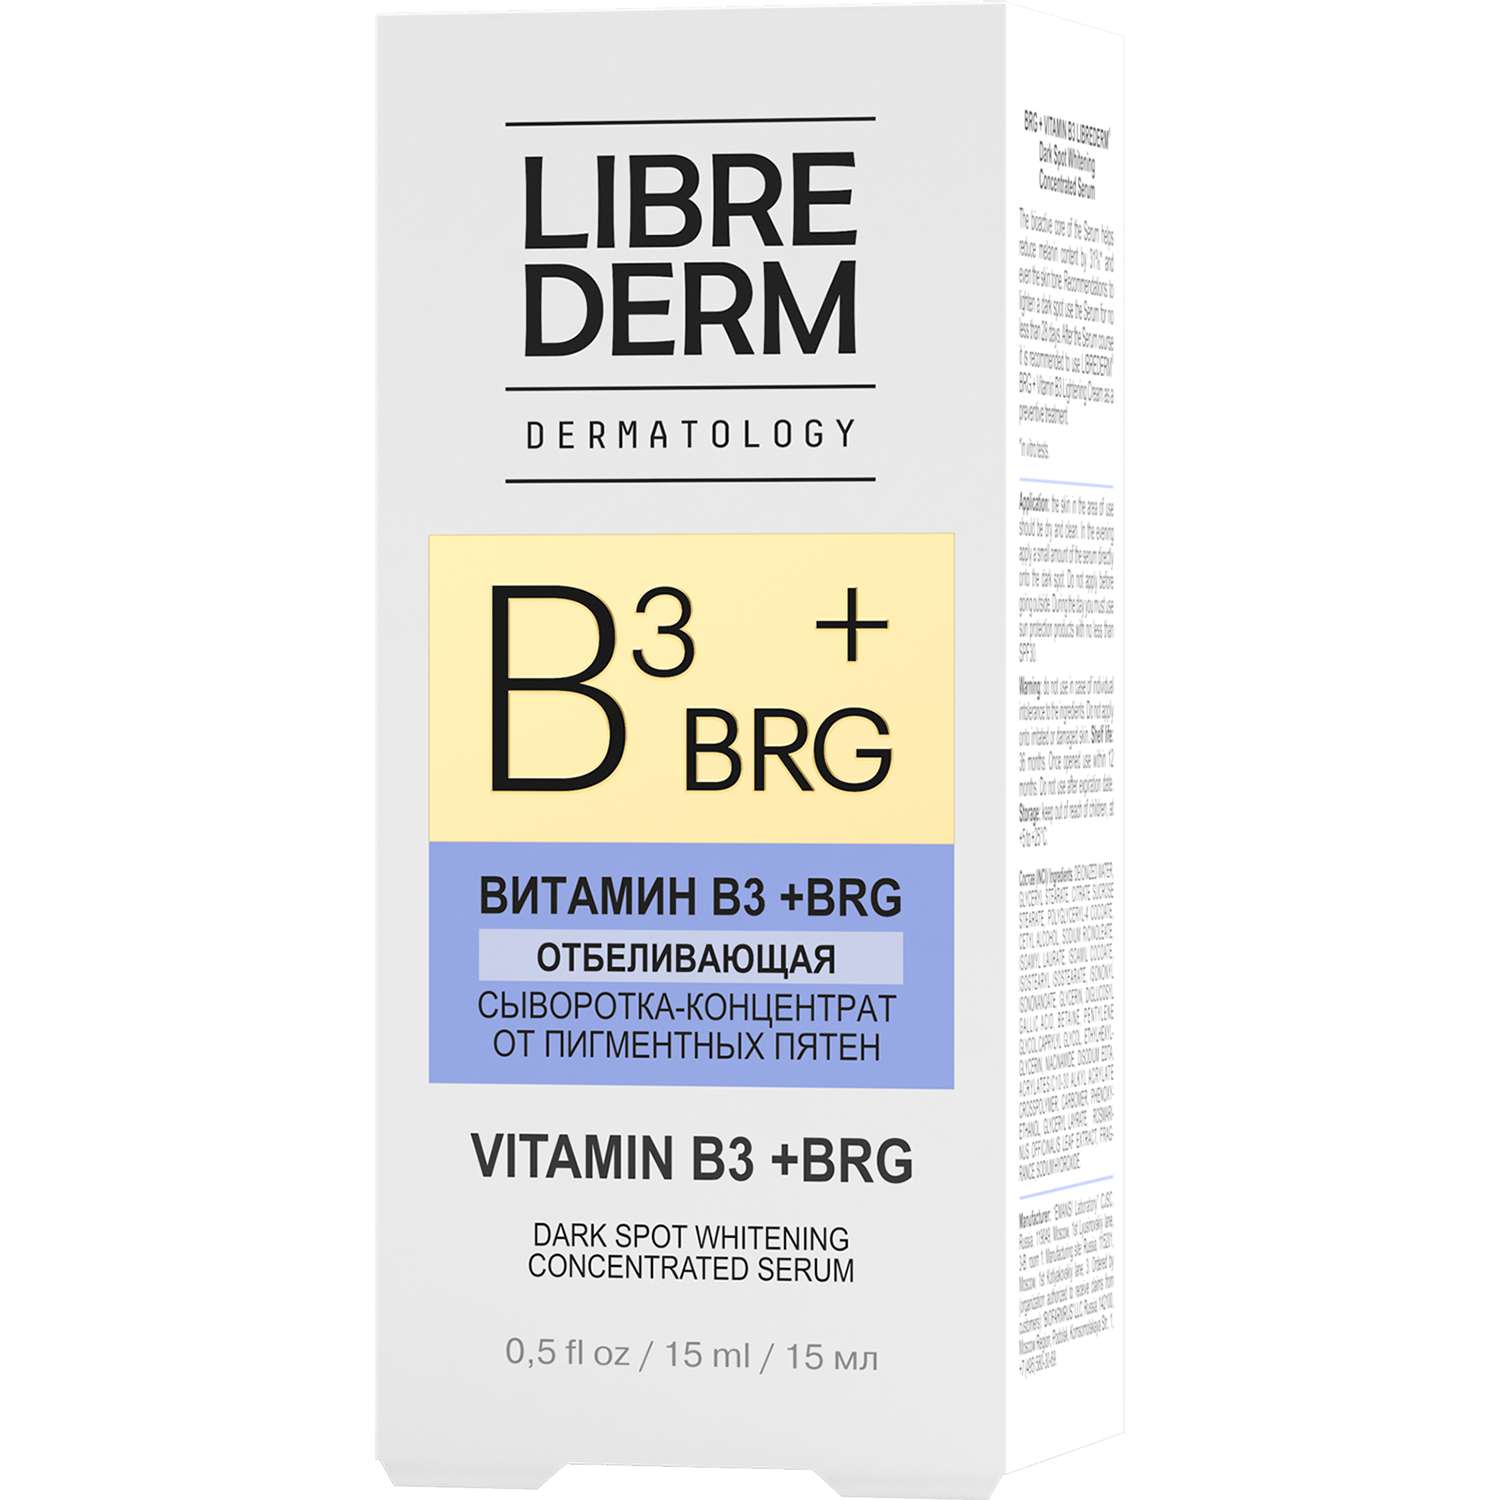 Сыворотка-концентрат Librederm ВRG и Витамин В3 отбеливающая точечного нанесения от пигментных пятен 15 мл - фото 3